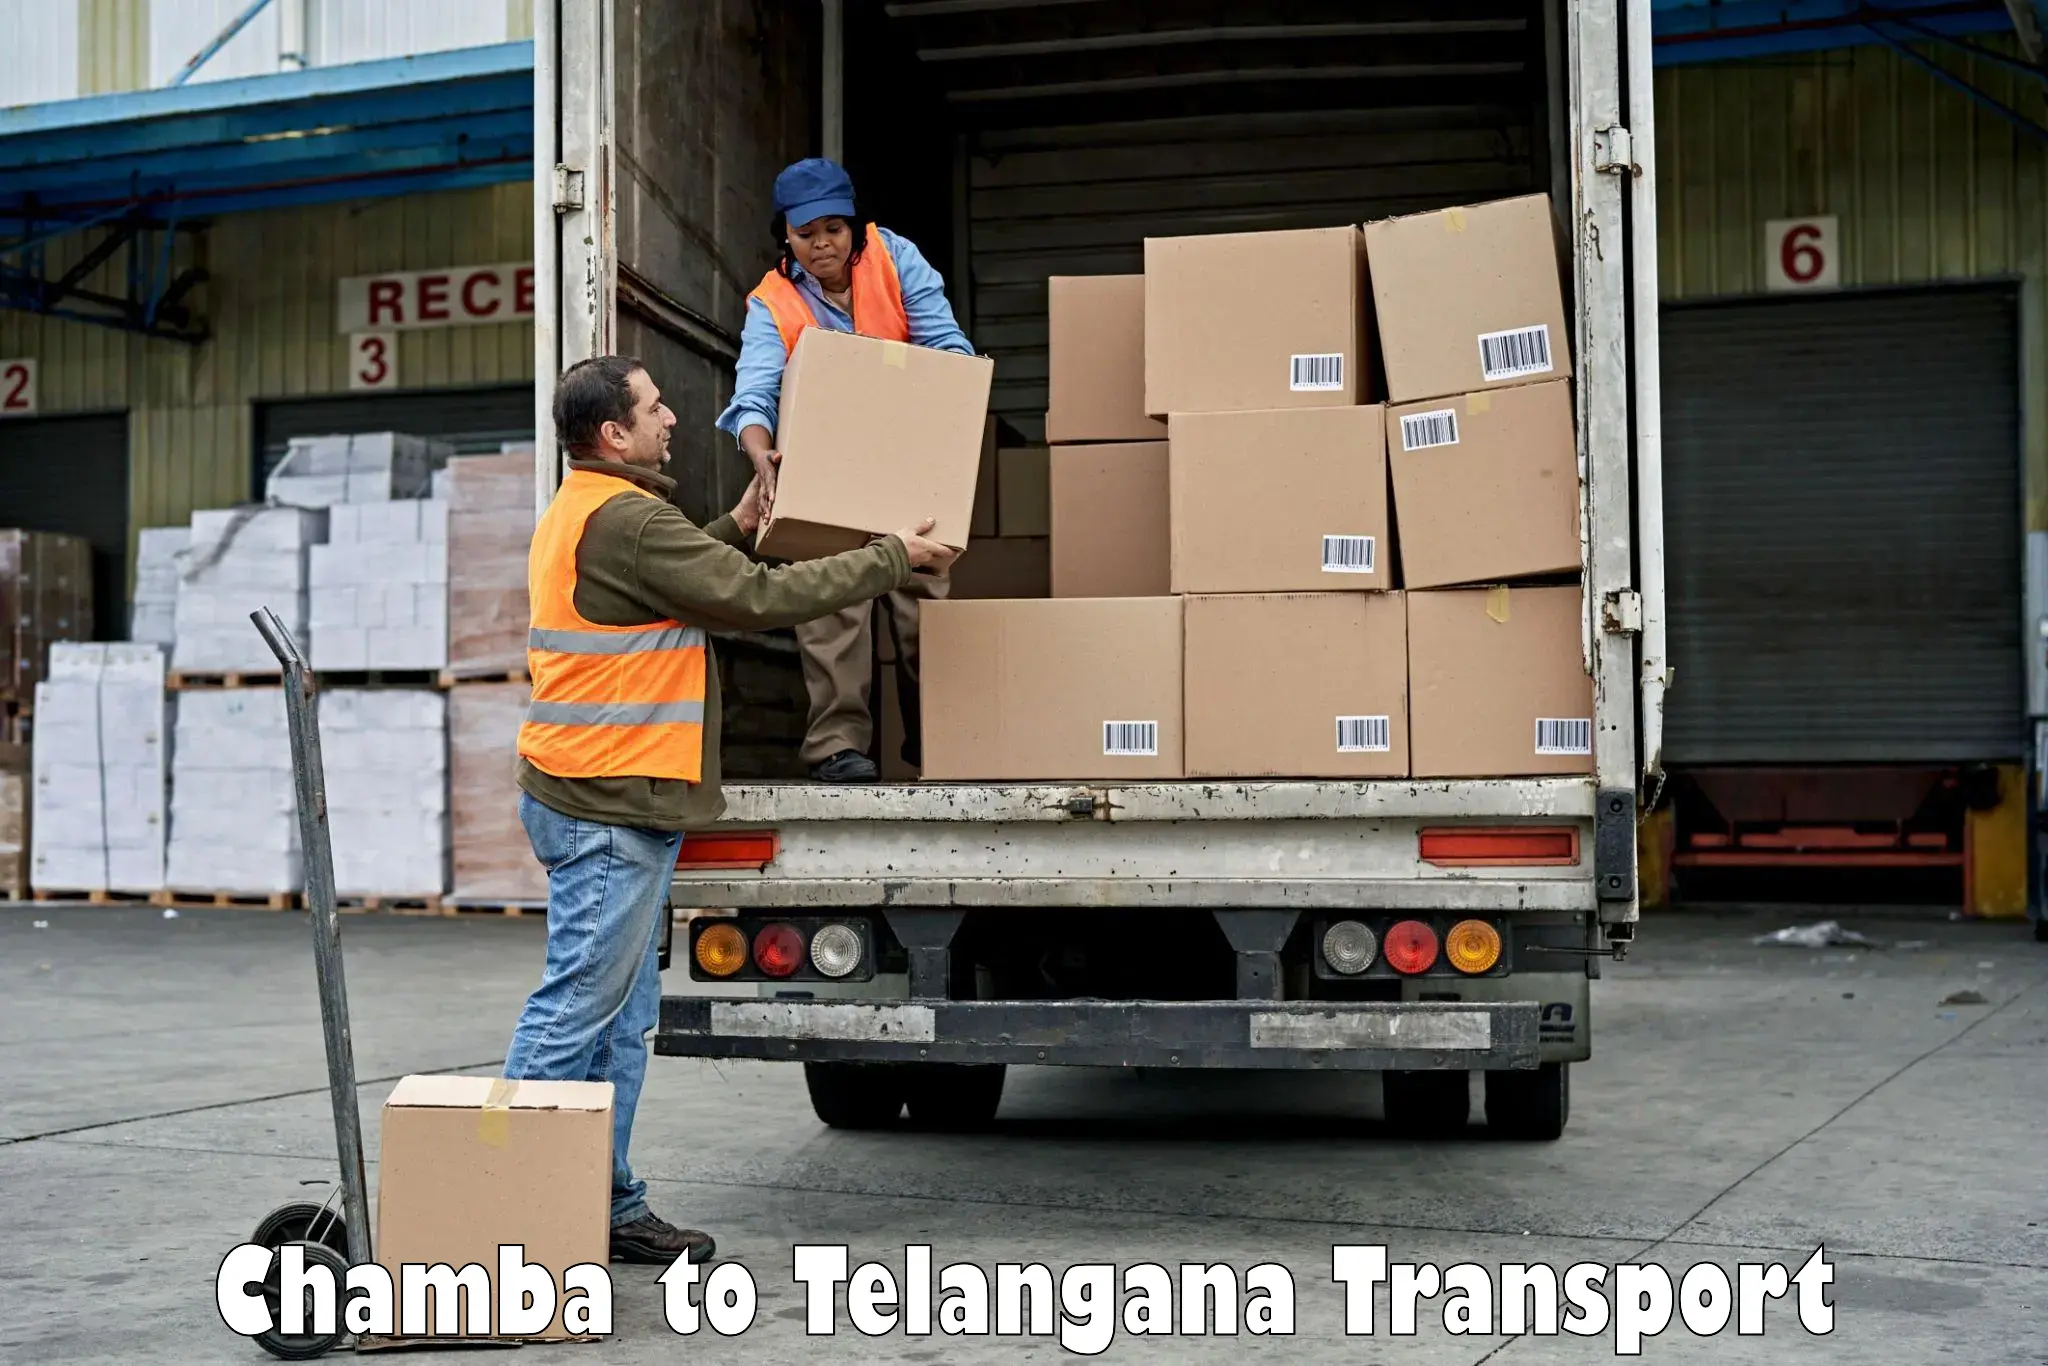 Online transport service Chamba to Babasagar